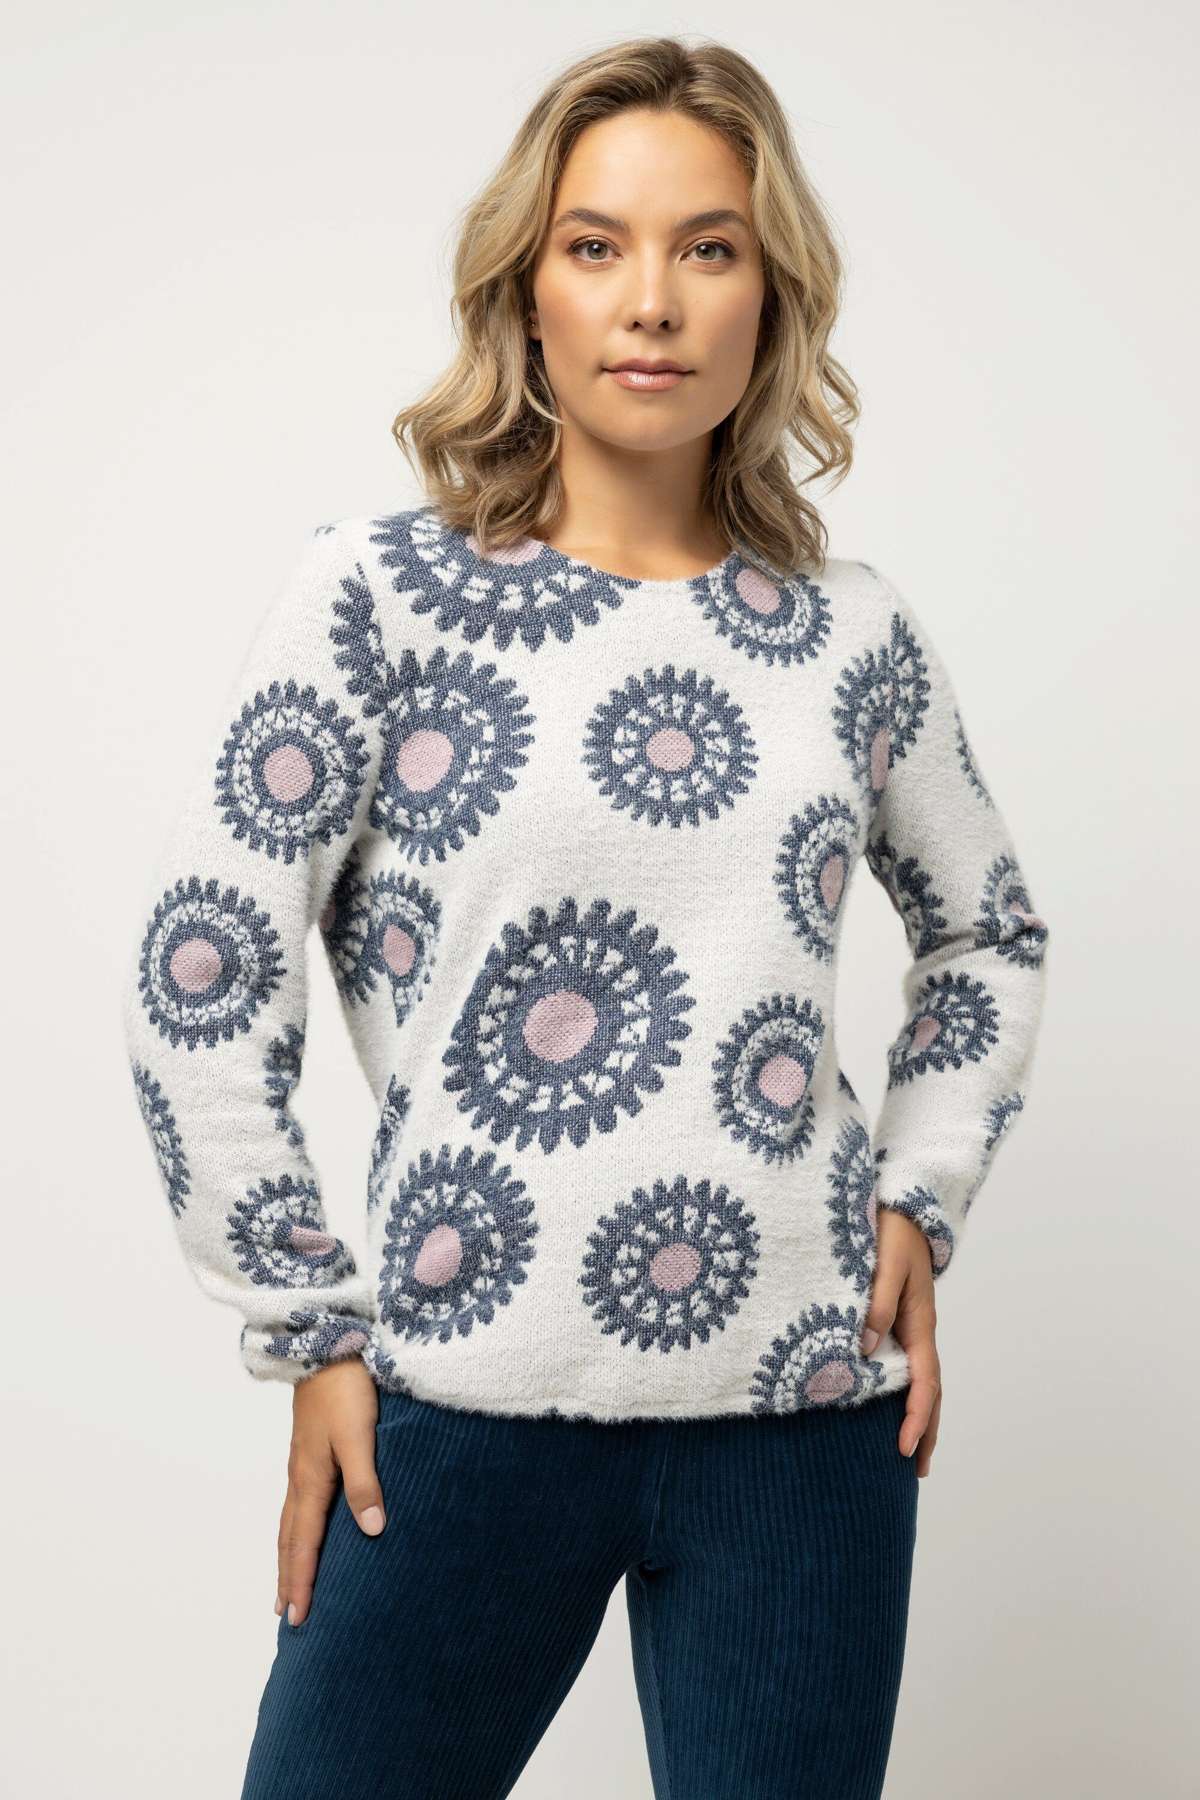 Вязаный свитер пуловер с графическим узором, круглым вырезом и длинными рукавами